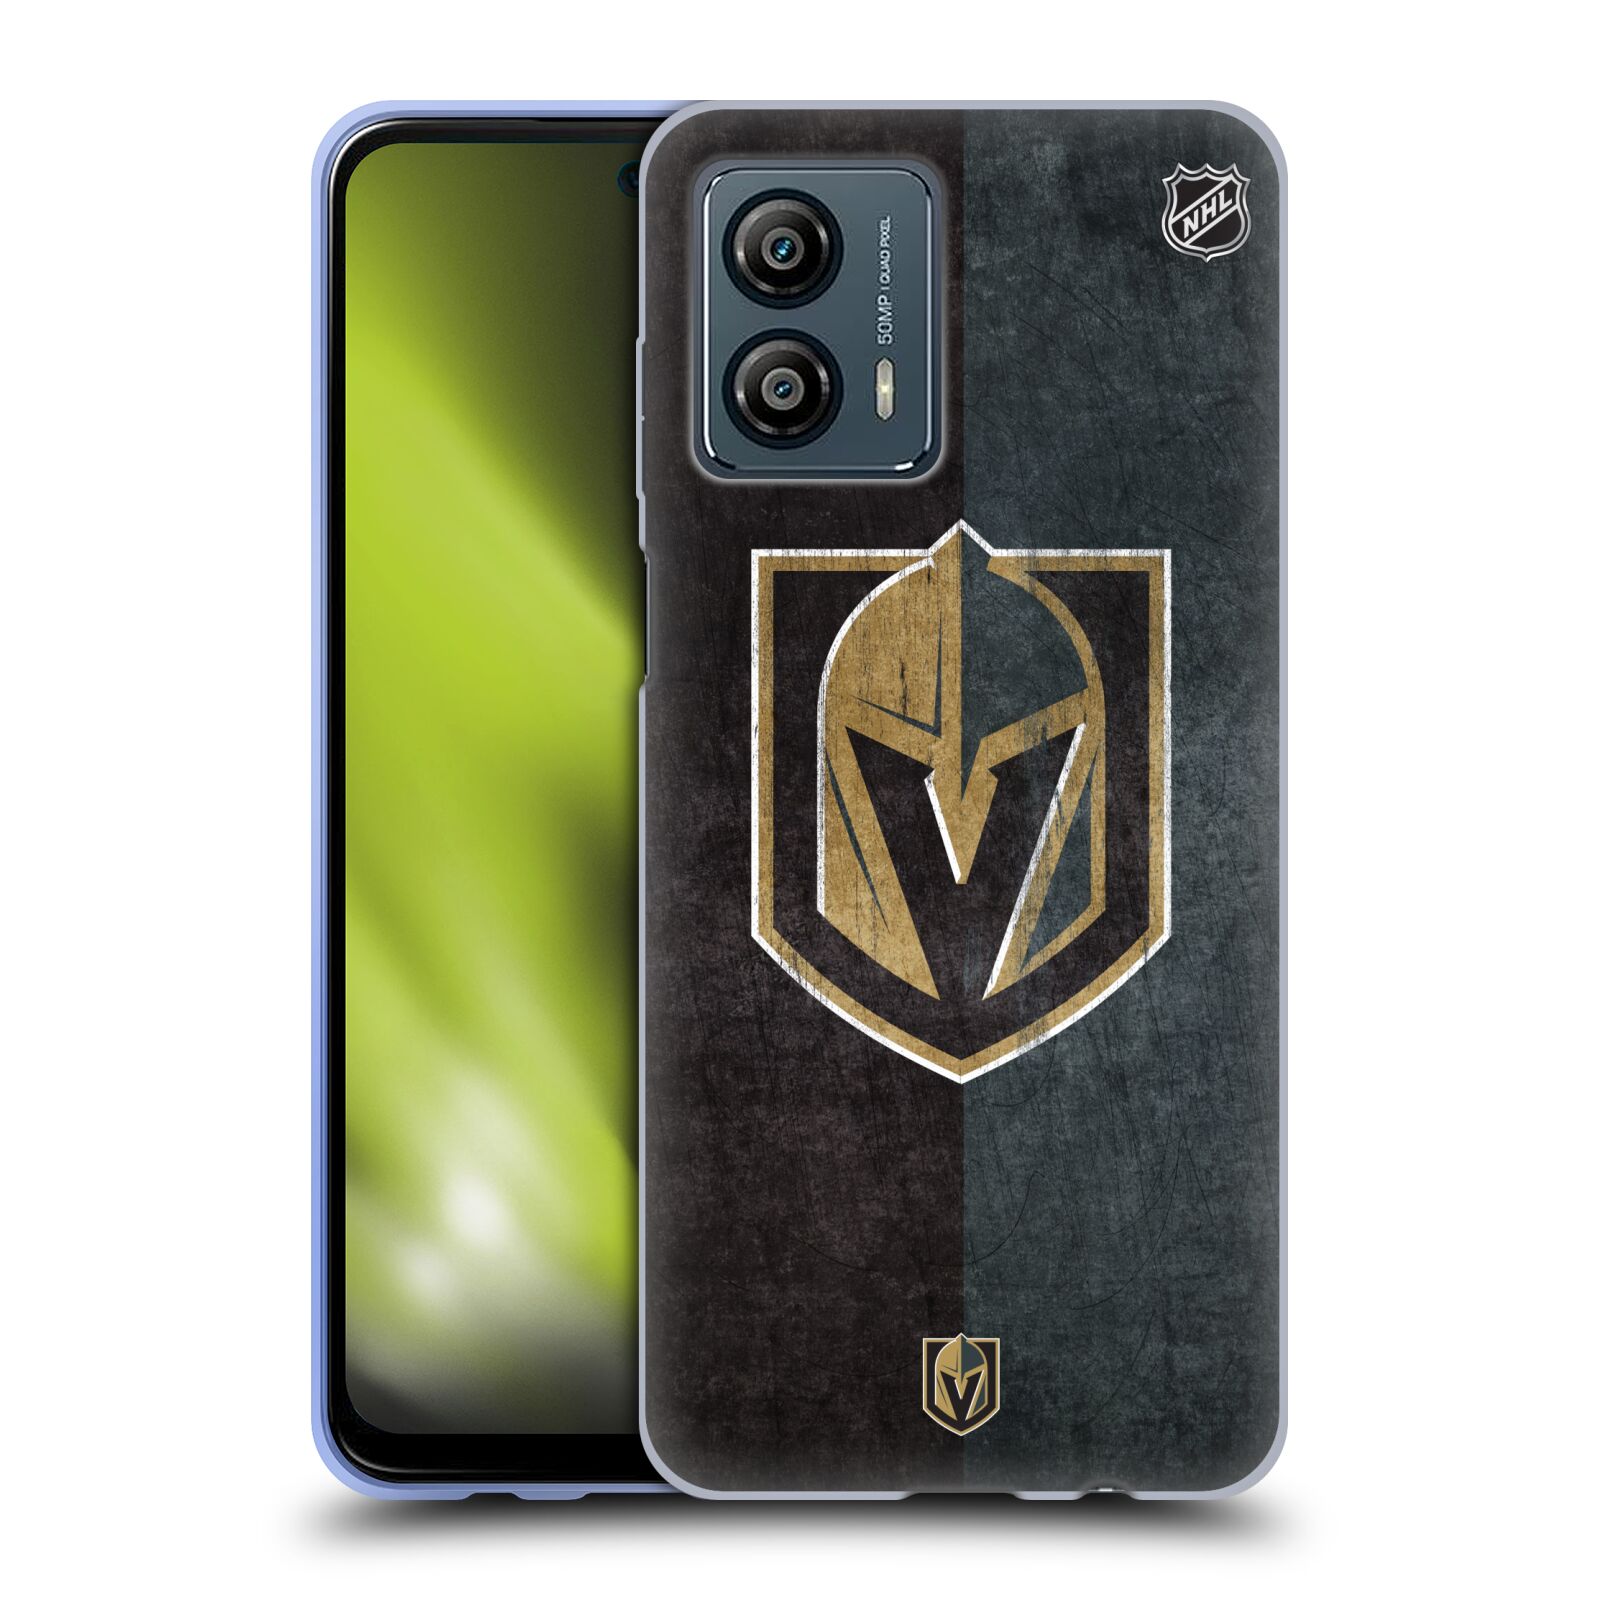 Silikonové pouzdro na mobil Motorola Moto G53 5G - NHL - Půlené logo Vegas Golden Knights (Silikonový kryt, obal, pouzdro na mobilní telefon Motorola Moto G53 5G s licencovaným motivem NHL - Půlené logo Vegas Golden Knights)